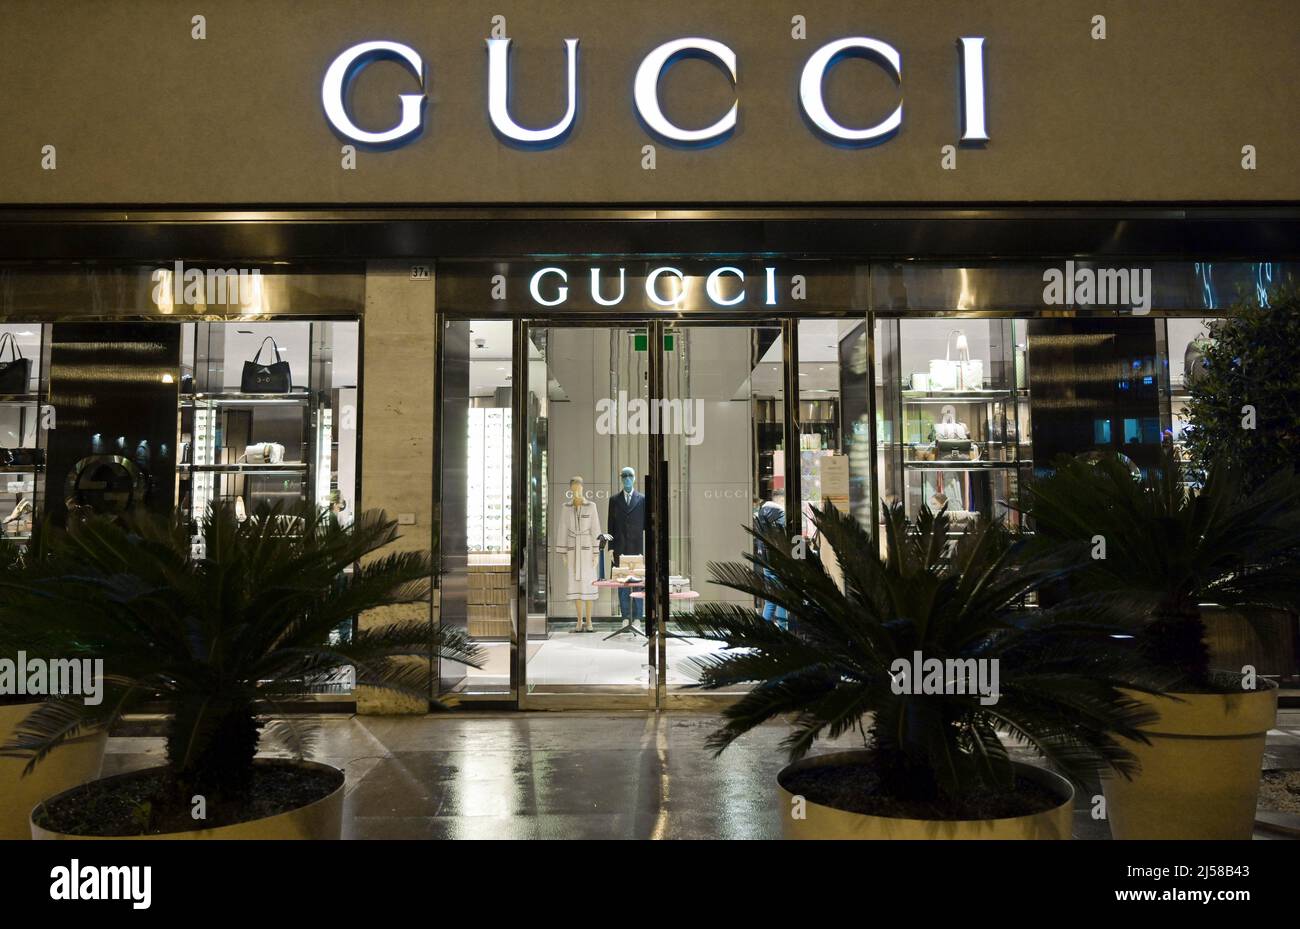 Gucci shop, Via della Liberta, Palermo, Sicily, Italy Stock Photo - Alamy